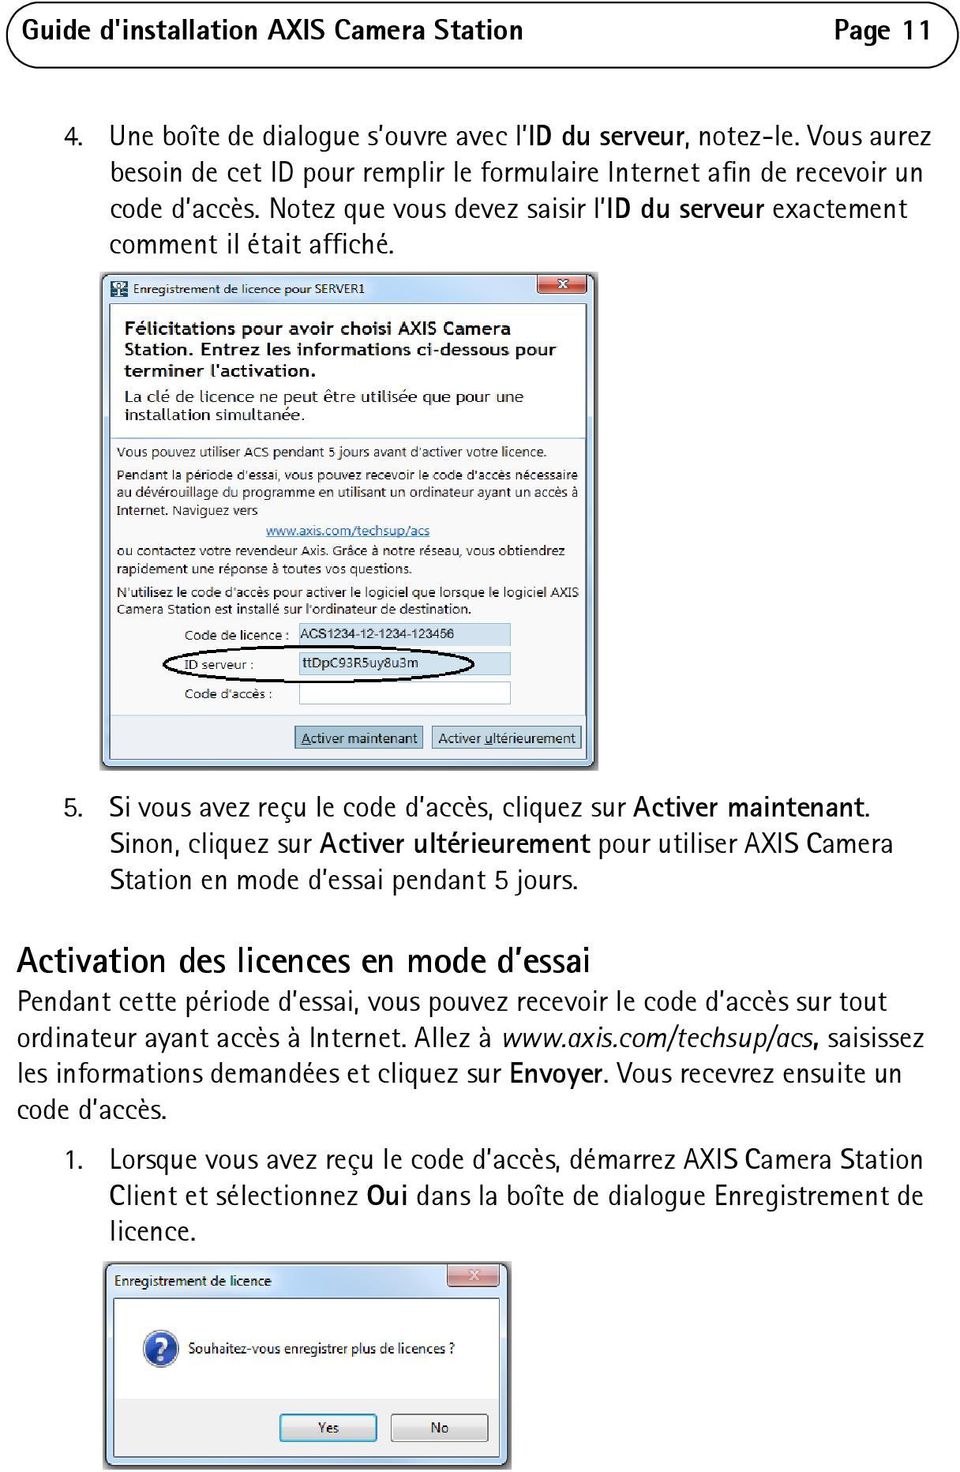 Si vous avez reçu le code d accès, cliquez sur Activer maintenant. Sinon, cliquez sur Activer ultérieurement pour utiliser AXIS Camera Station en mode d essai pendant 5 jours.